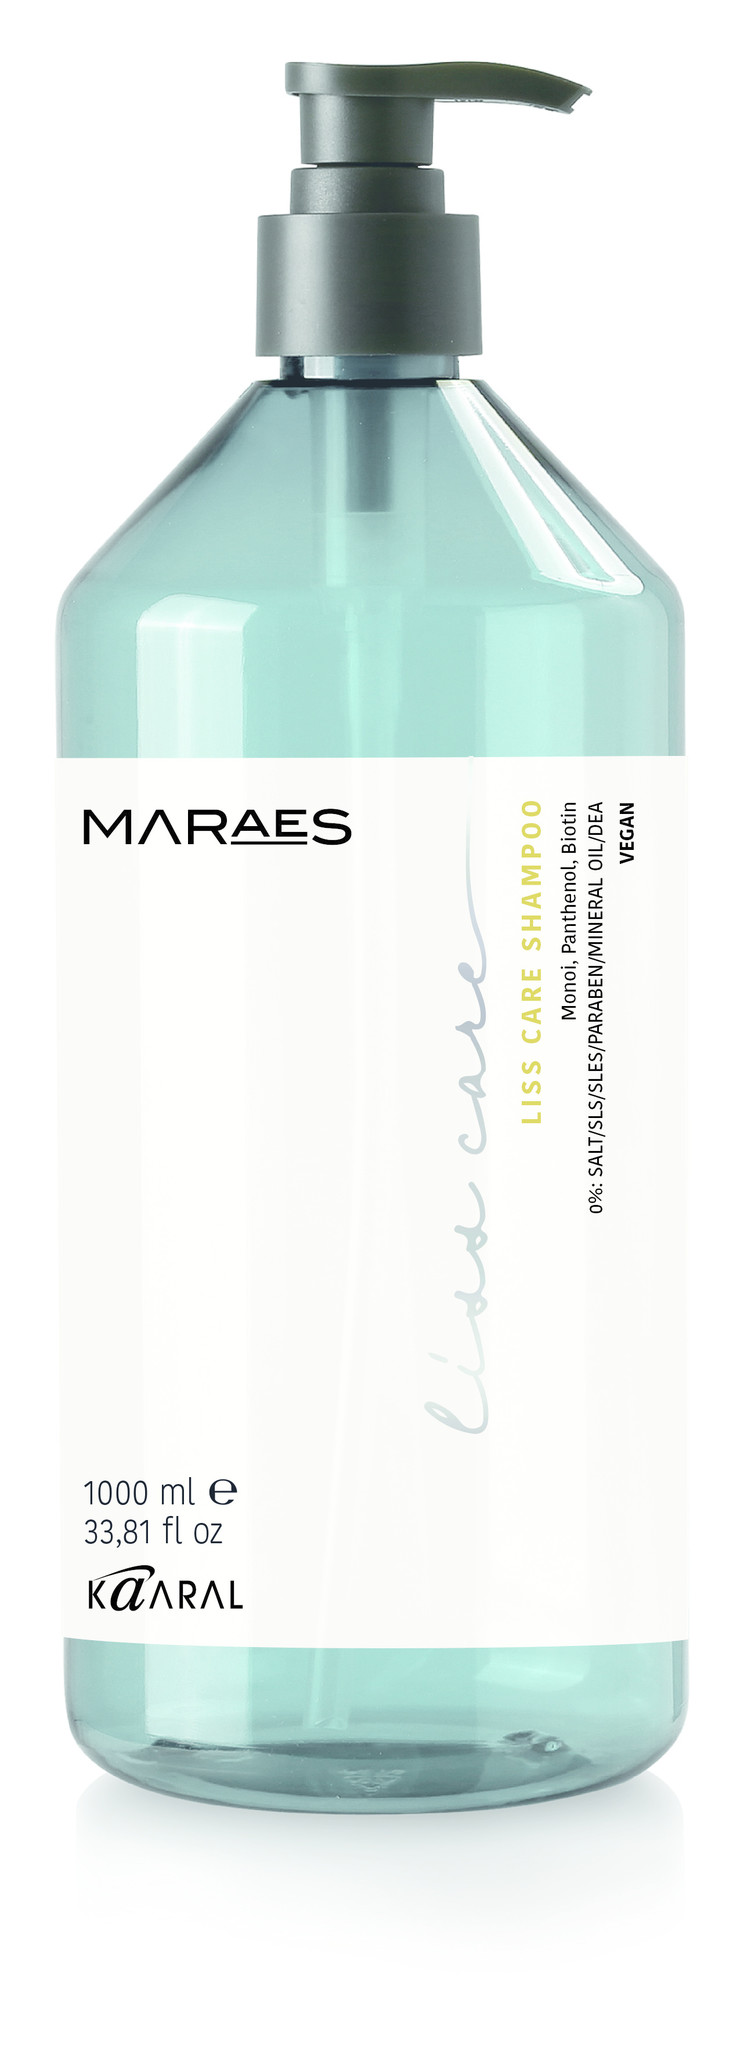 Maraes Kaaral Maraes liss care shampoo 1000ml